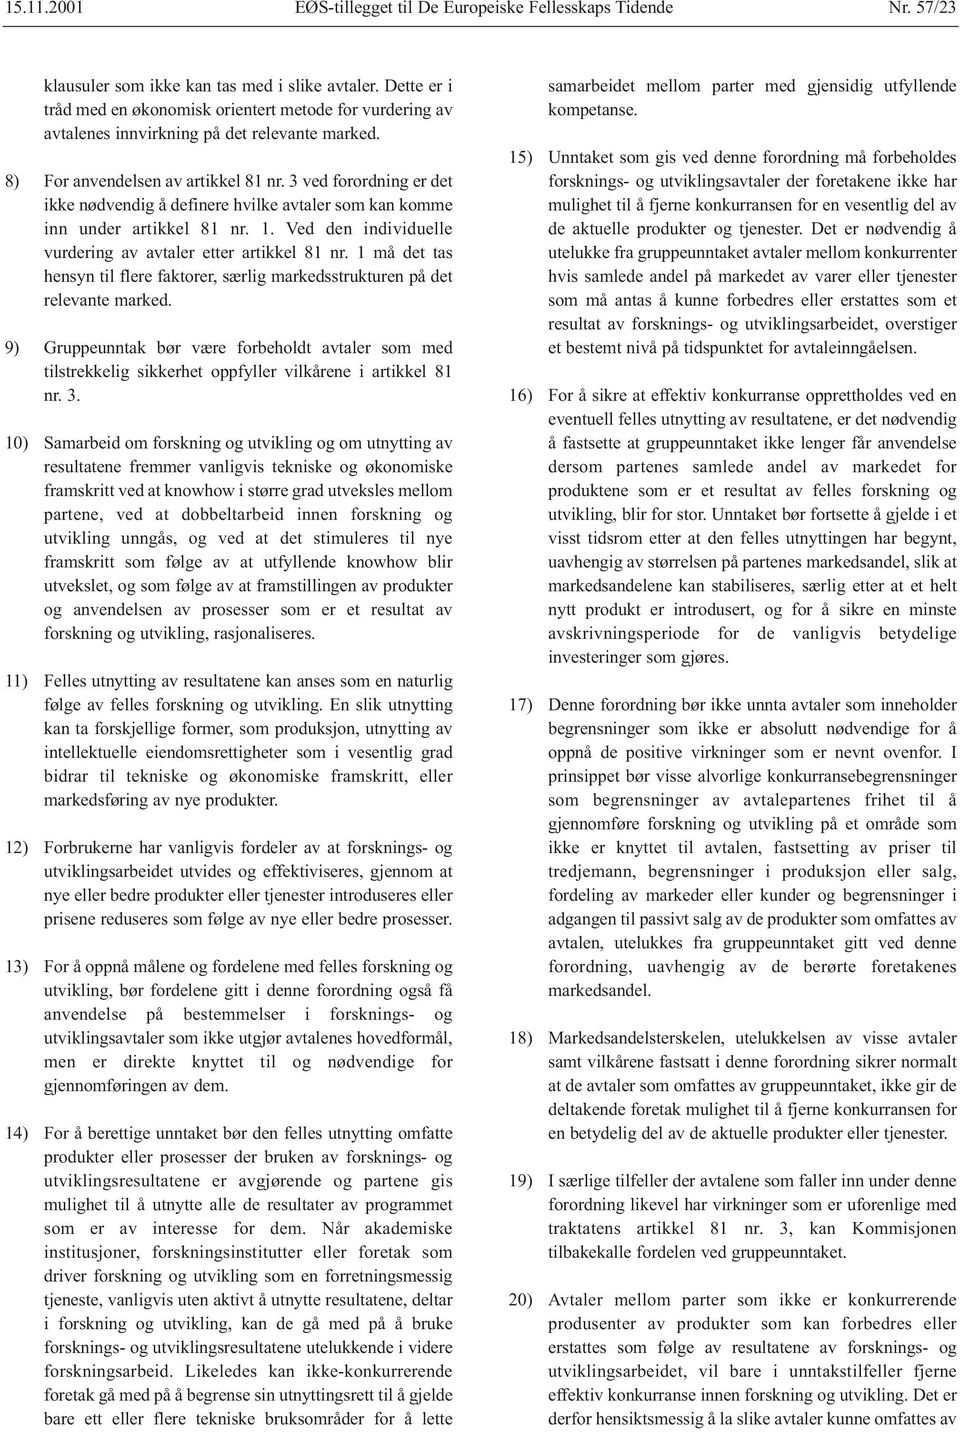 3 ved forordning er det ikke nødvendig å definere hvilke avtaler som kan komme inn under artikkel 81 nr. 1. Ved den individuelle vurdering av avtaler etter artikkel 81 nr.